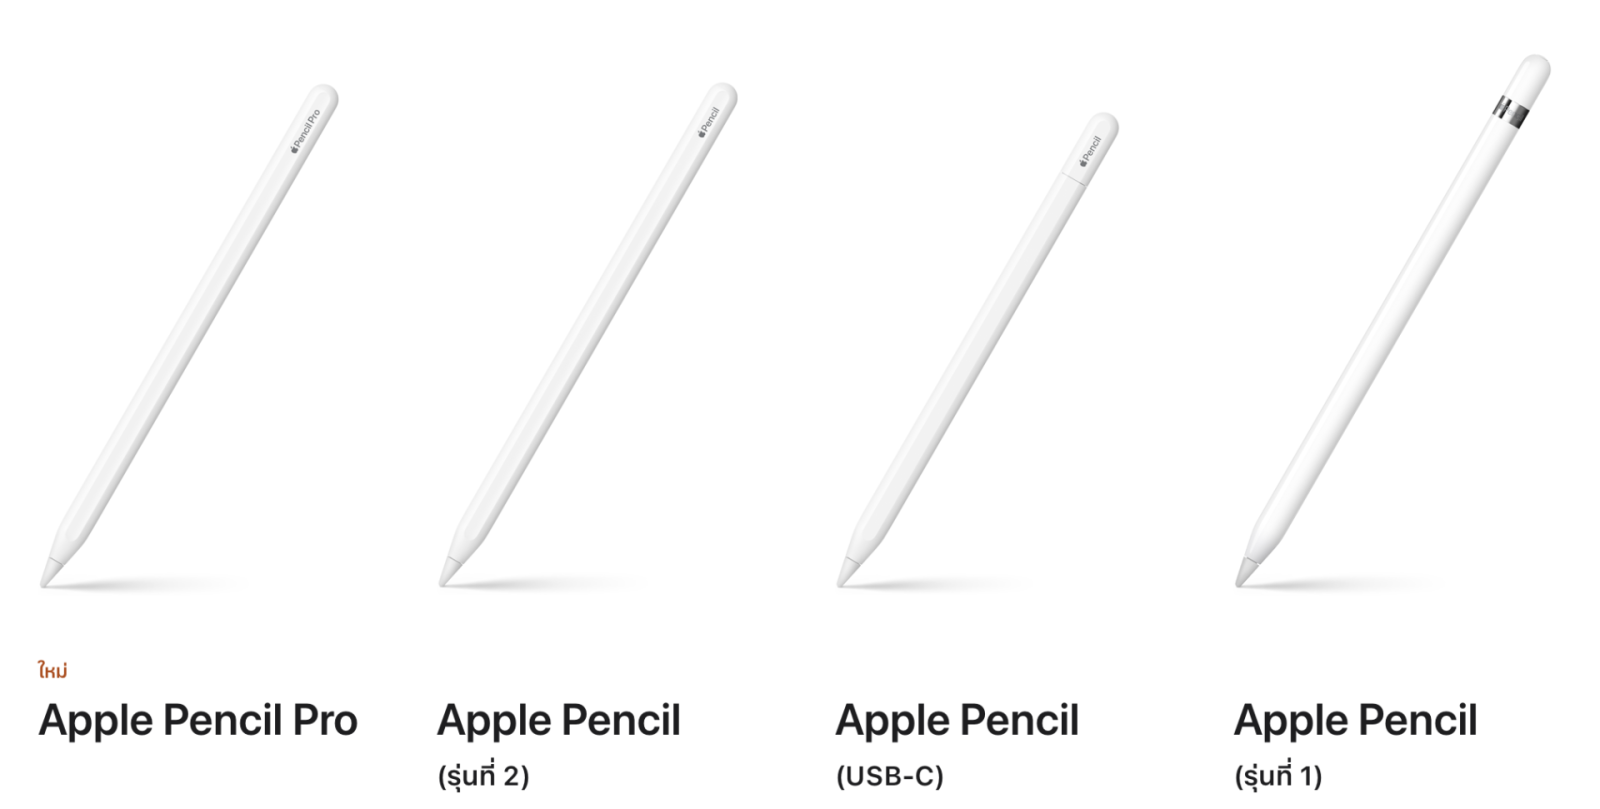 เยอะแยะไปหมด! วิธีเลือกซื้อ apple pencil รุ่นไหนใช้กับ ipad ของเราได้